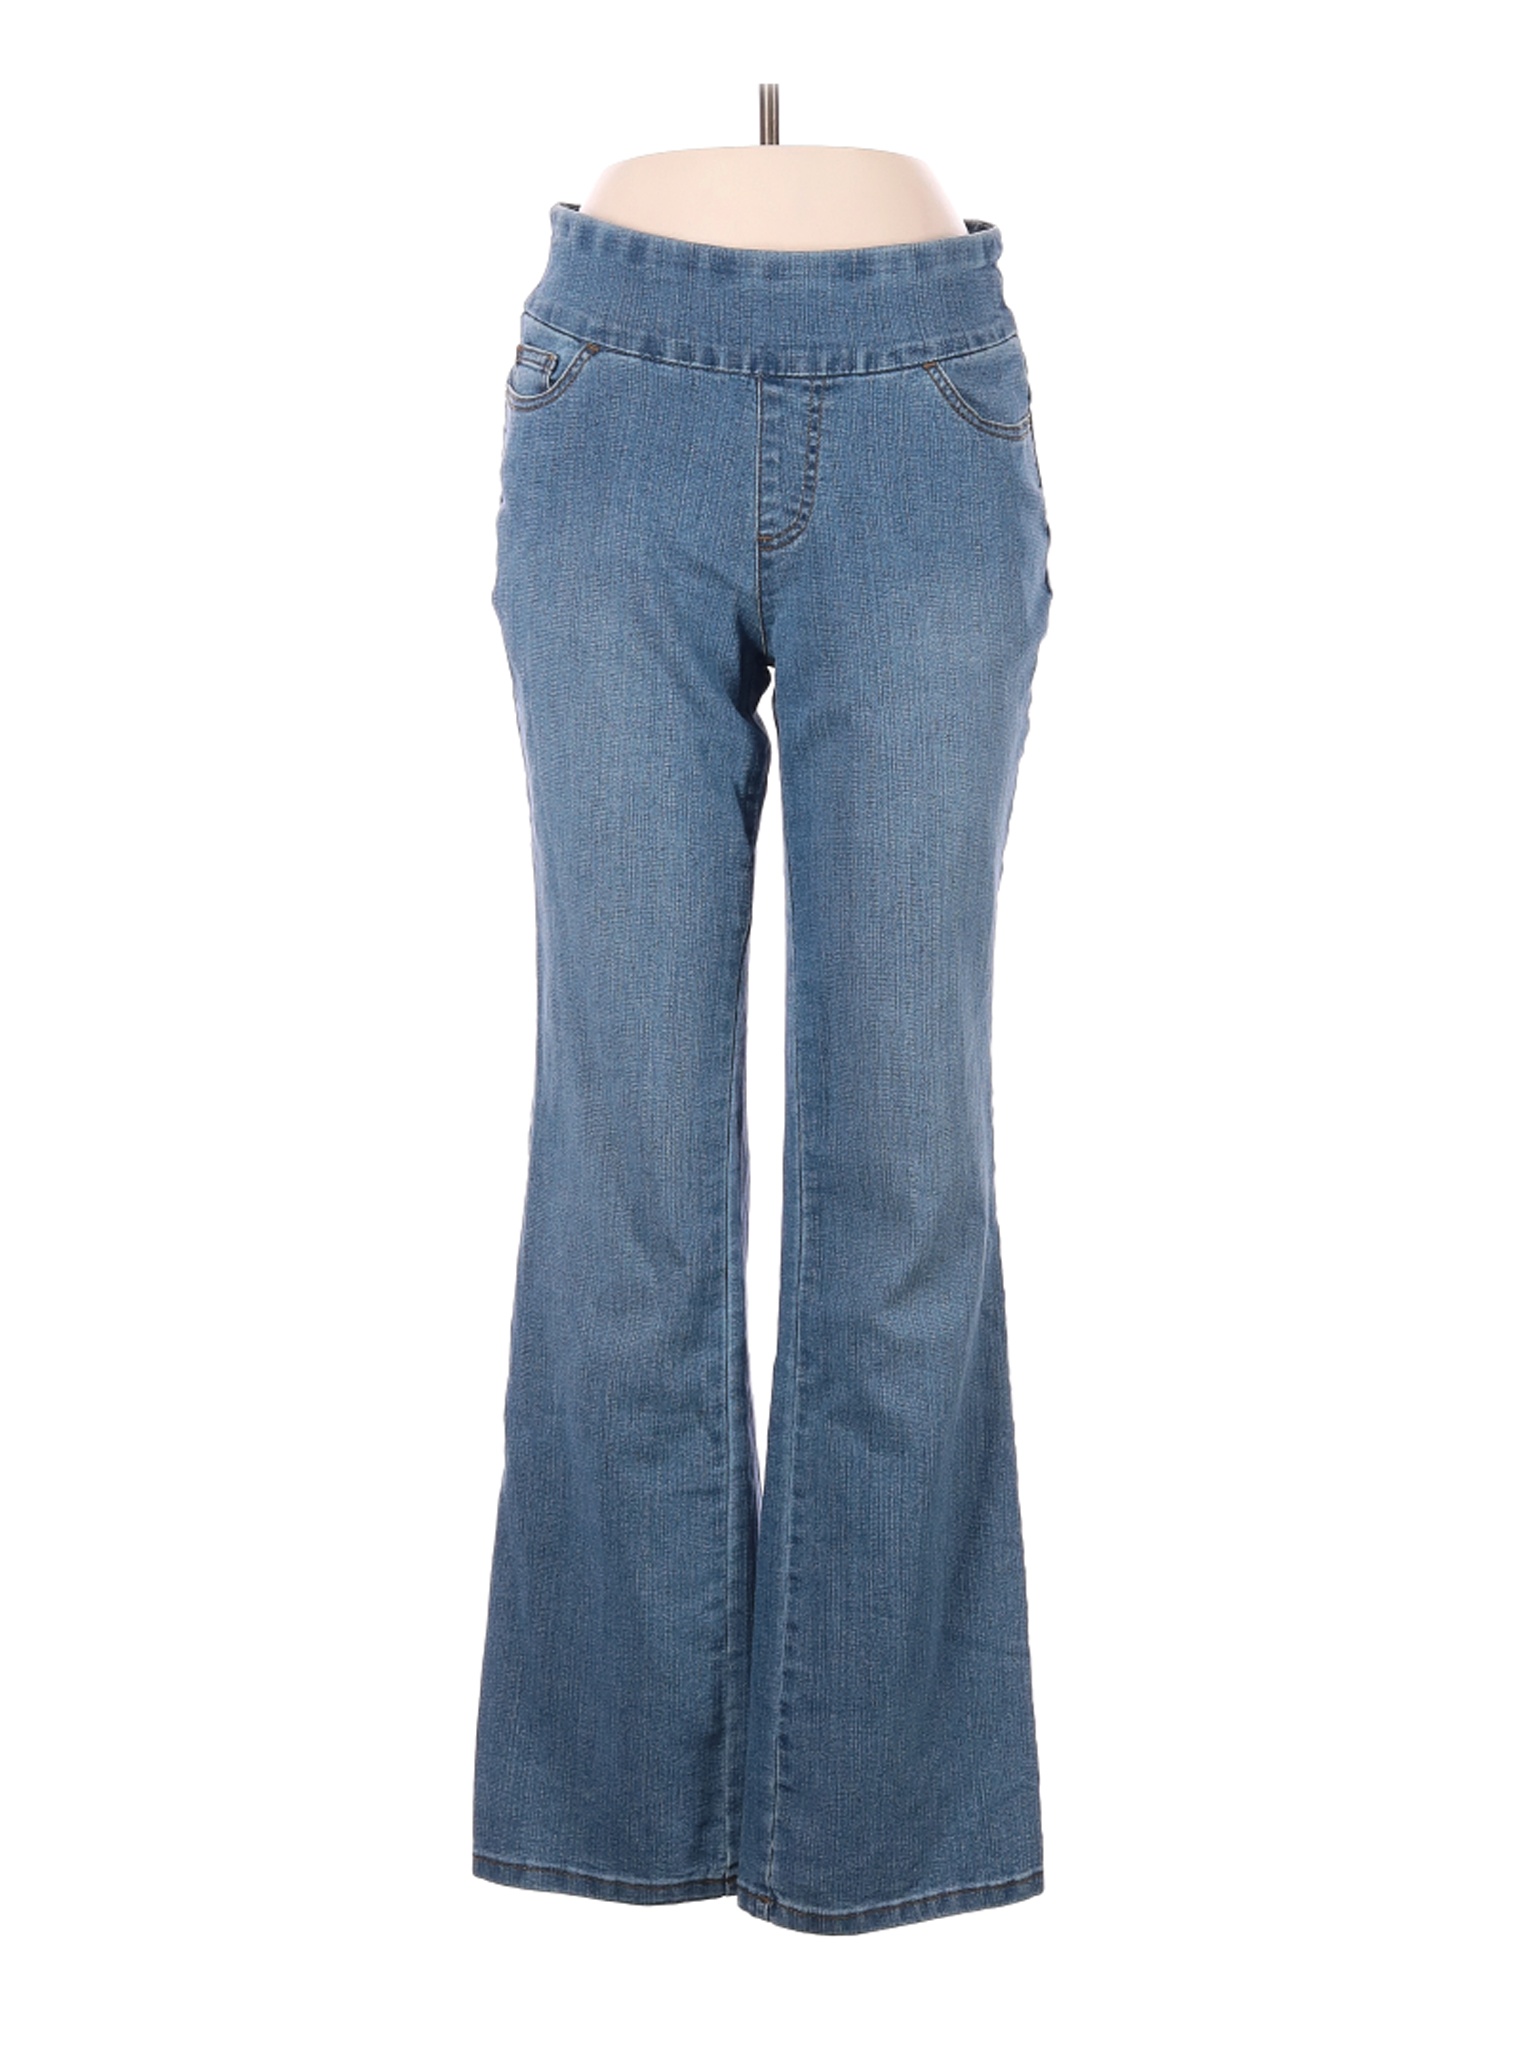 D&Co. Women Blue Jeans 6 | eBay